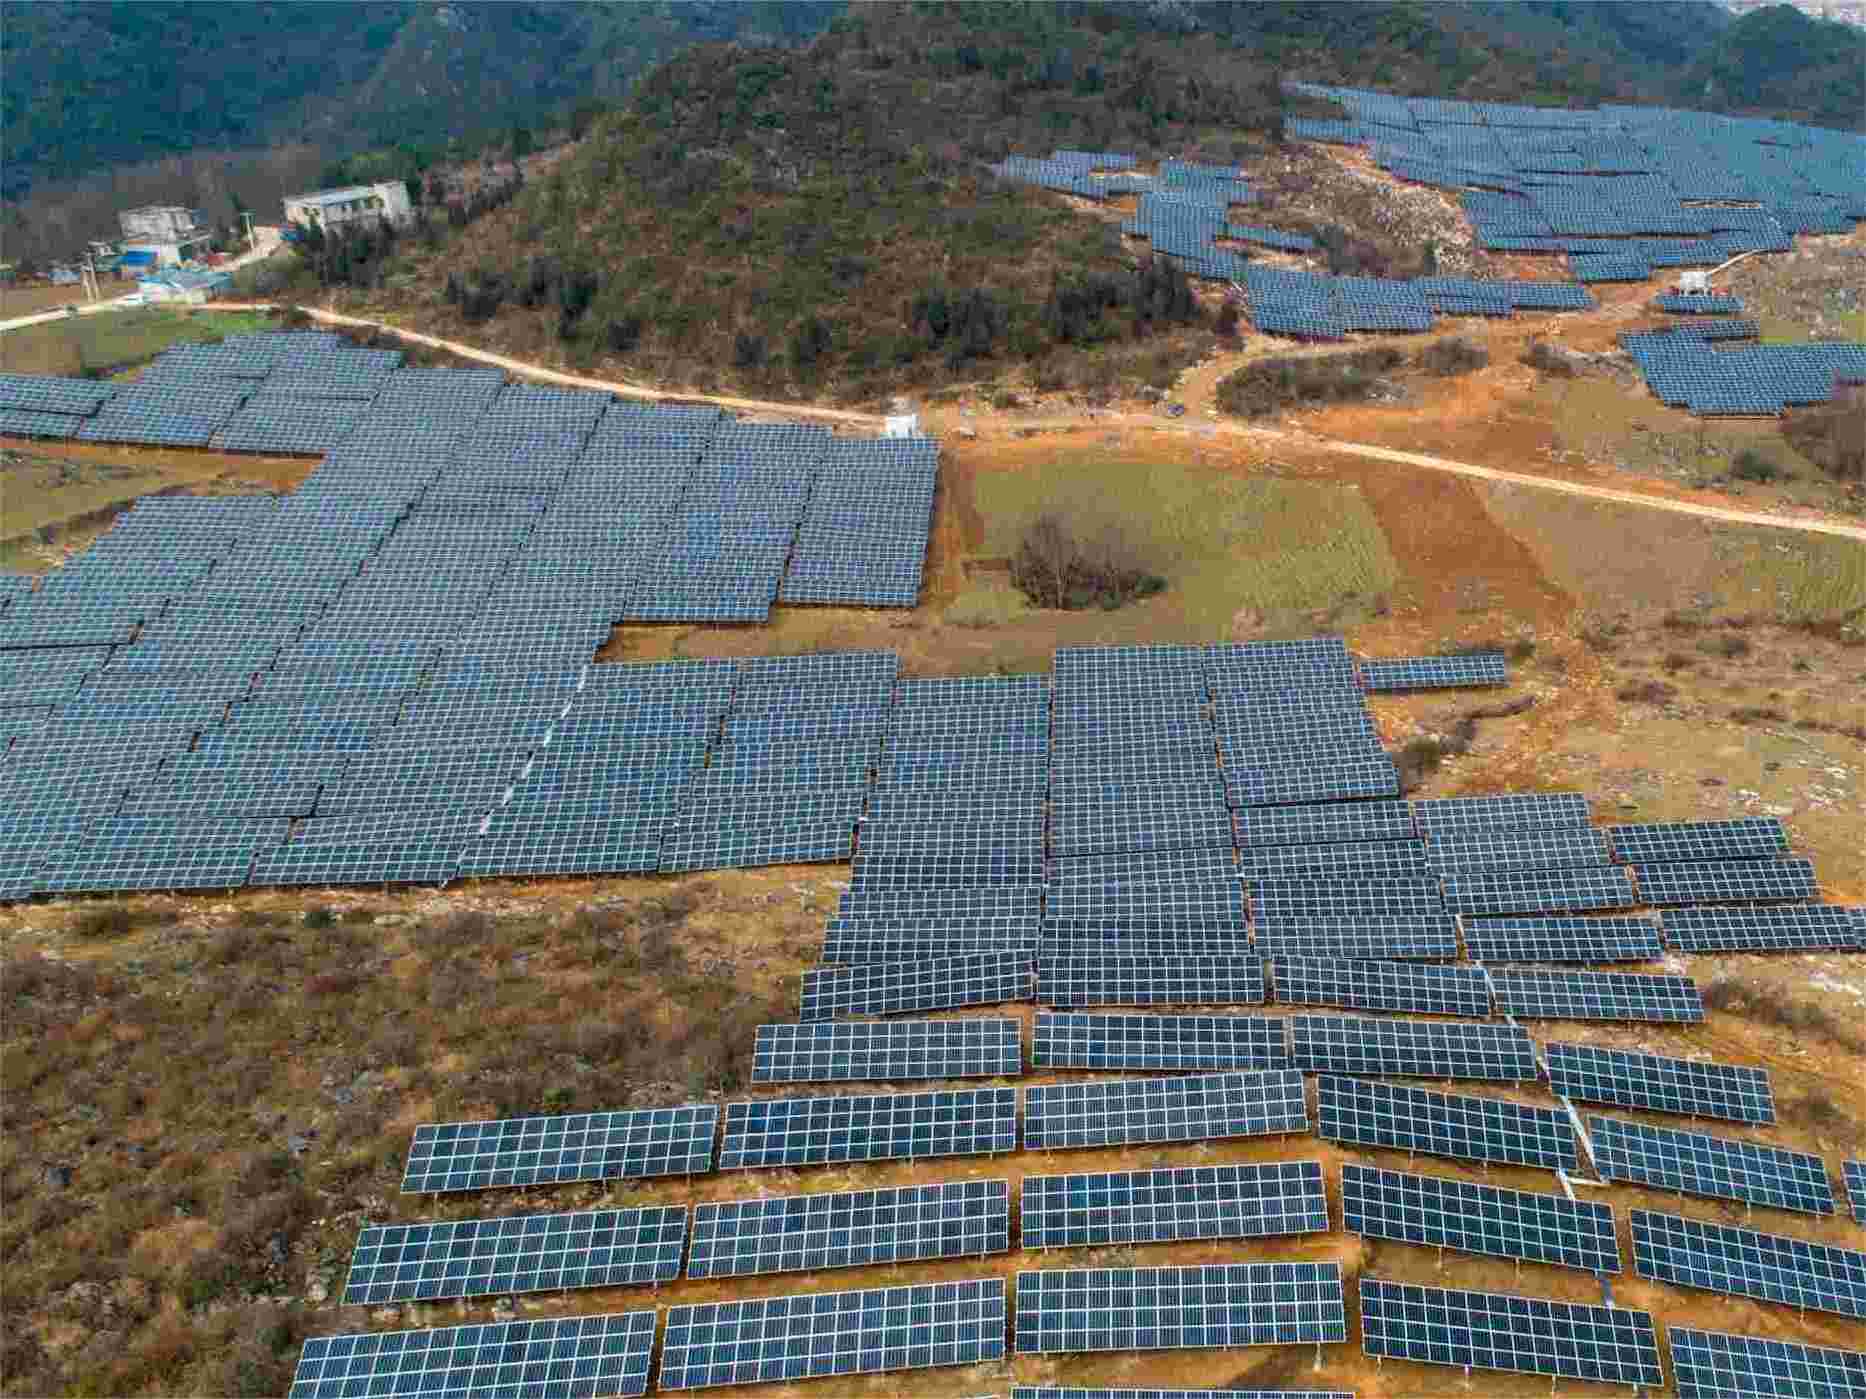 Proyecto de 16 MW conectado a la red solar en las montañas (Guizhou, China)